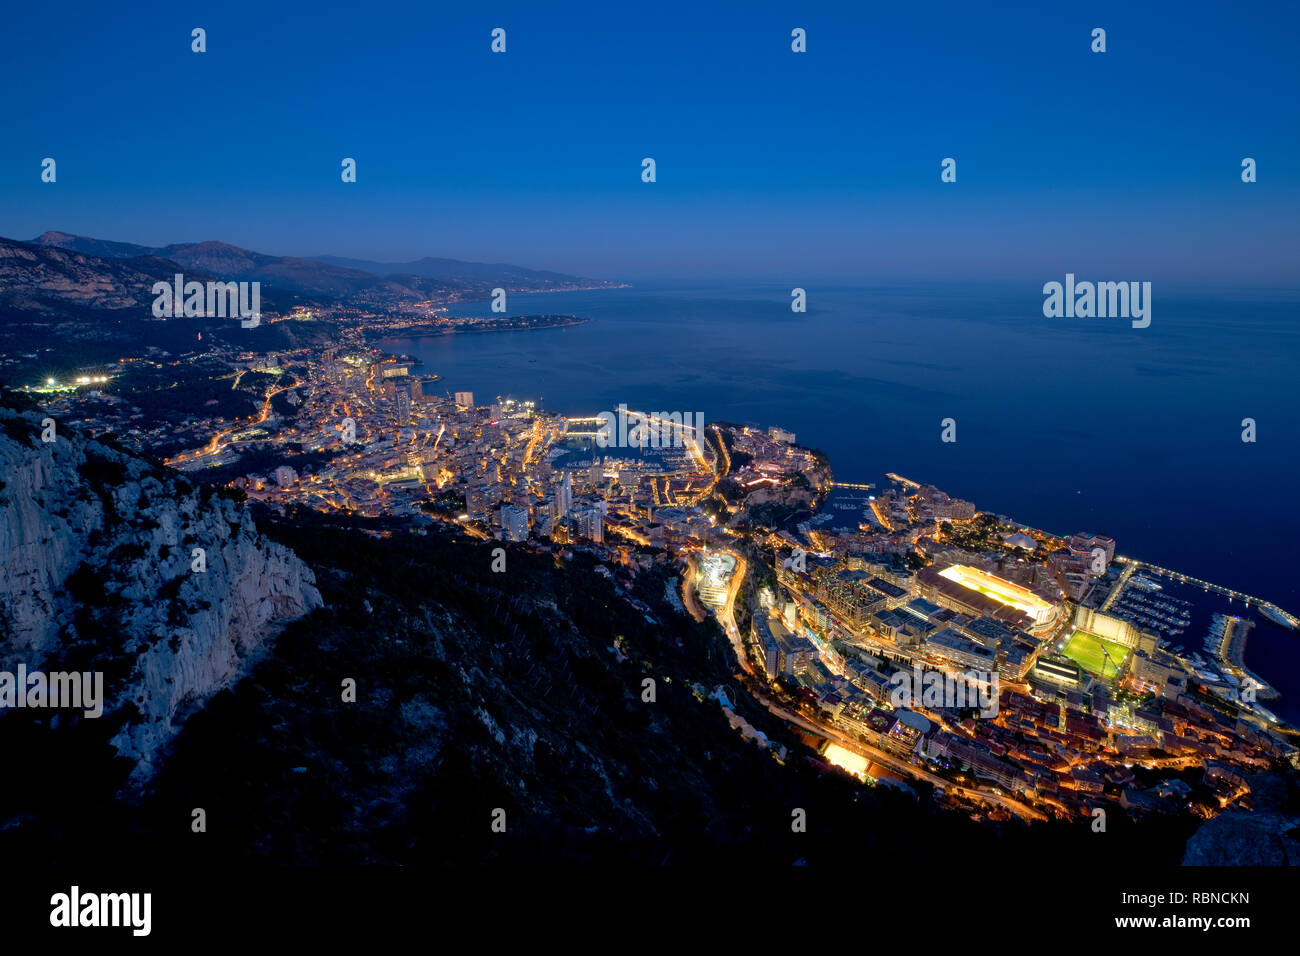 Vue panoramique de Monaco à partir de la tête de chien (tête de chien) haut rocher promontoire au crépuscule Banque D'Images